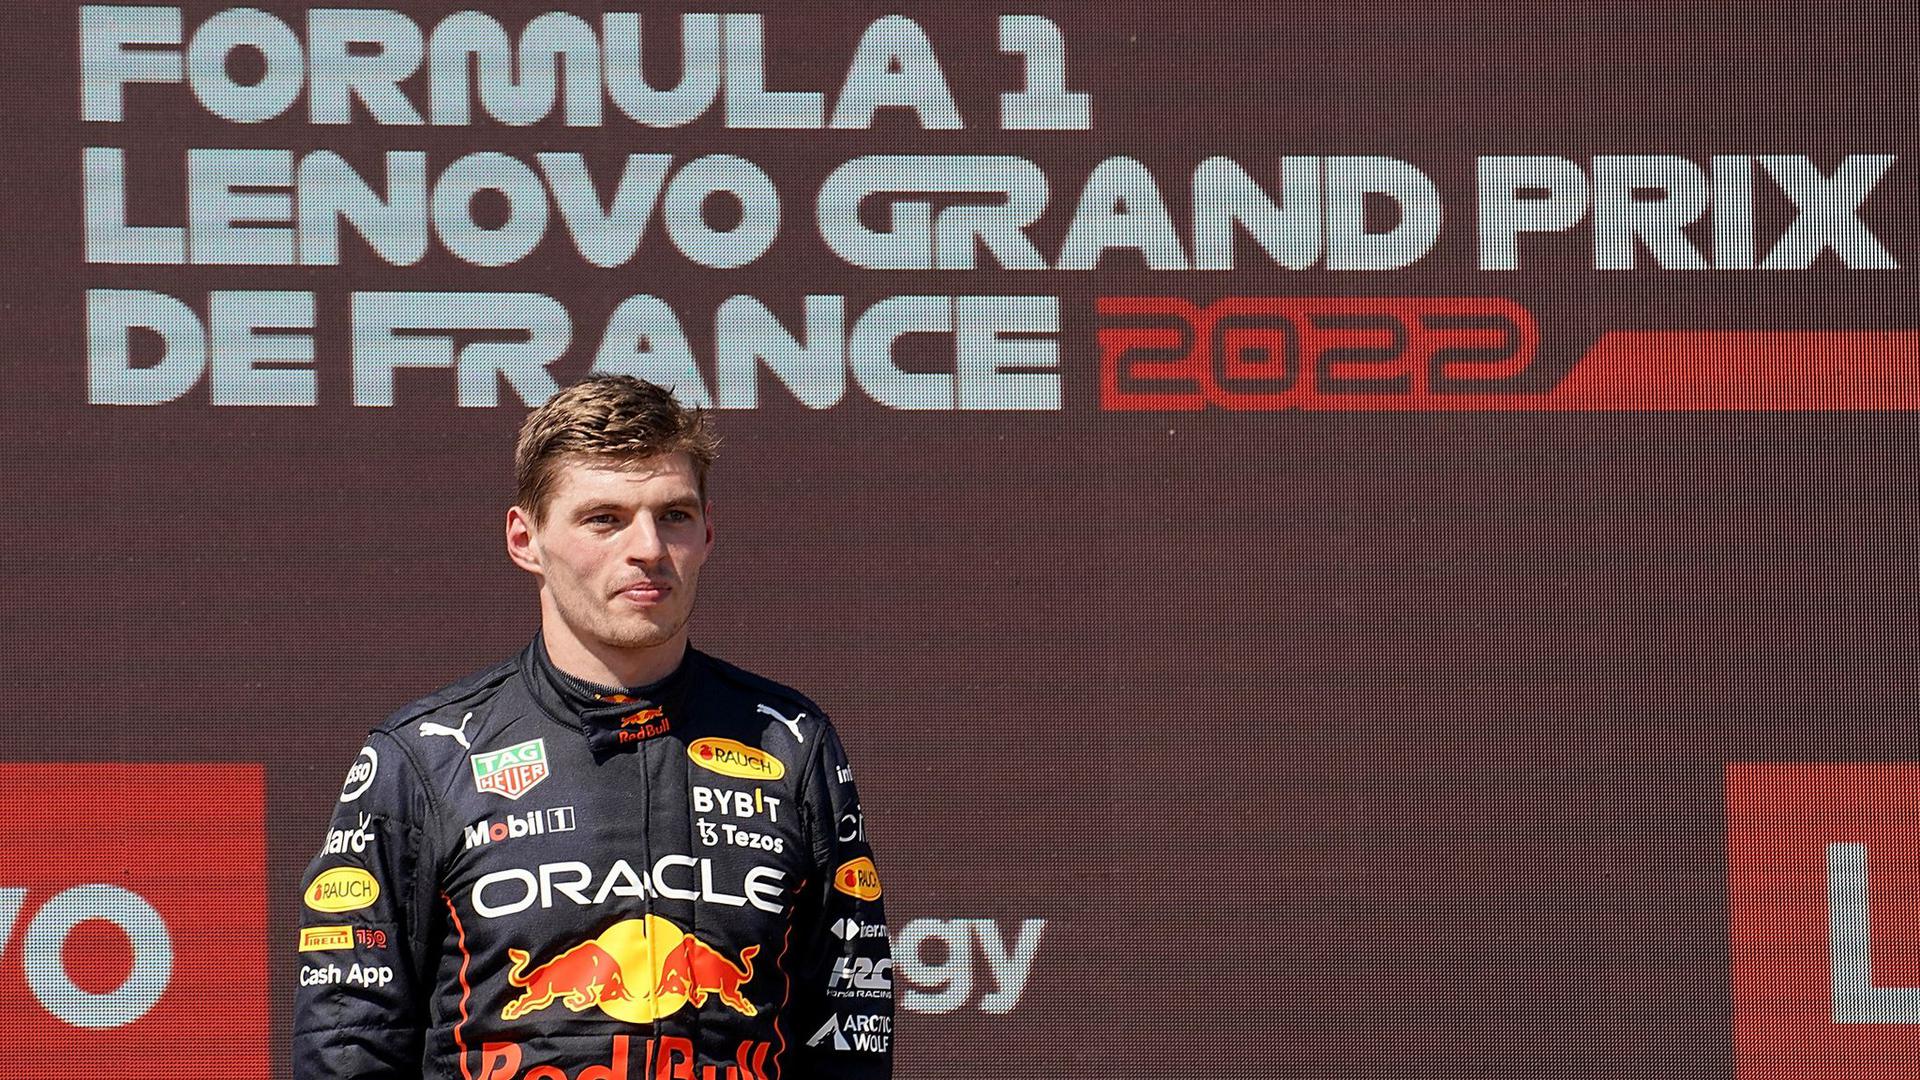 Der Niederländer Max Verstappen vom Team Oracle Red Bull hat den Großen Preis von Frankreich gewonnen.